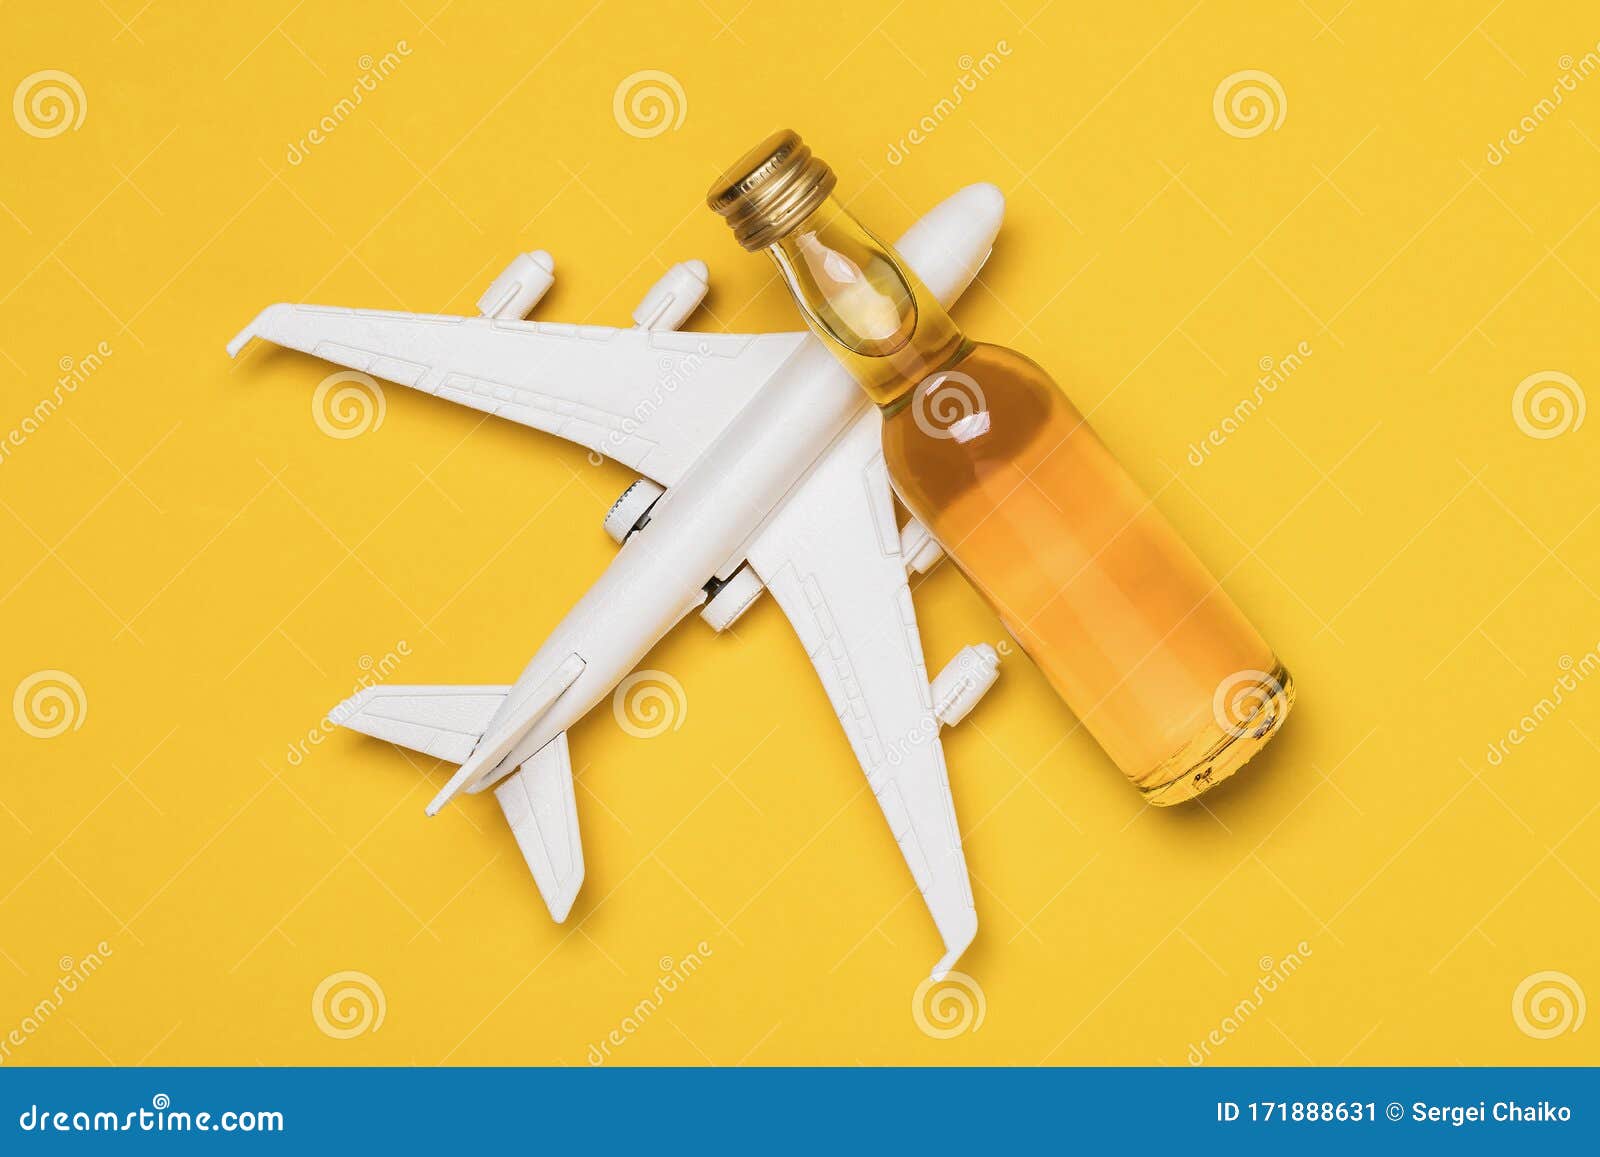 Avión Y De Whisky En Un Fondo Amarillo, Vista Superior Concepto Sobre El Tema De La Embriaguez Entre Pilotos Imagen de archivo - Imagen de piloto, transporte: 171888631